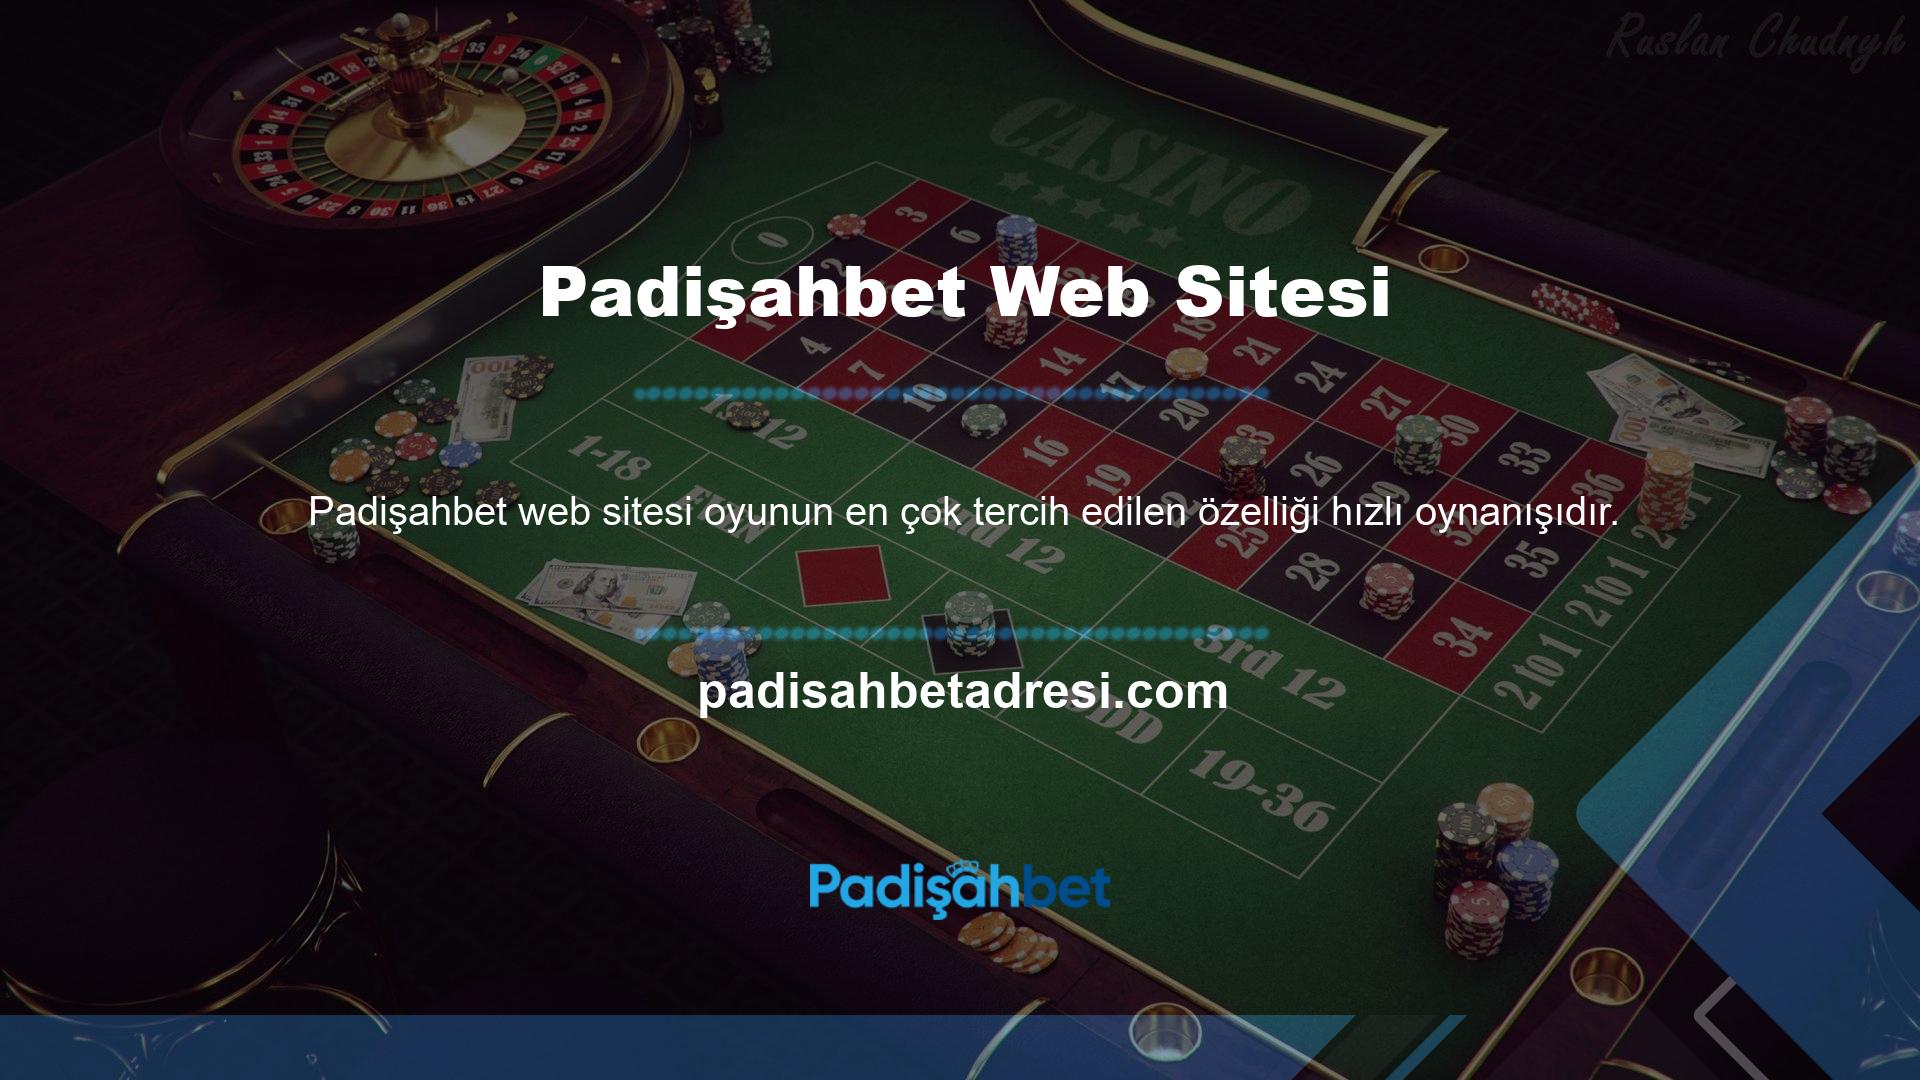 Padişahbet web sitesi yatırım teşvikleri sunan slot makineleri sunmaktadır